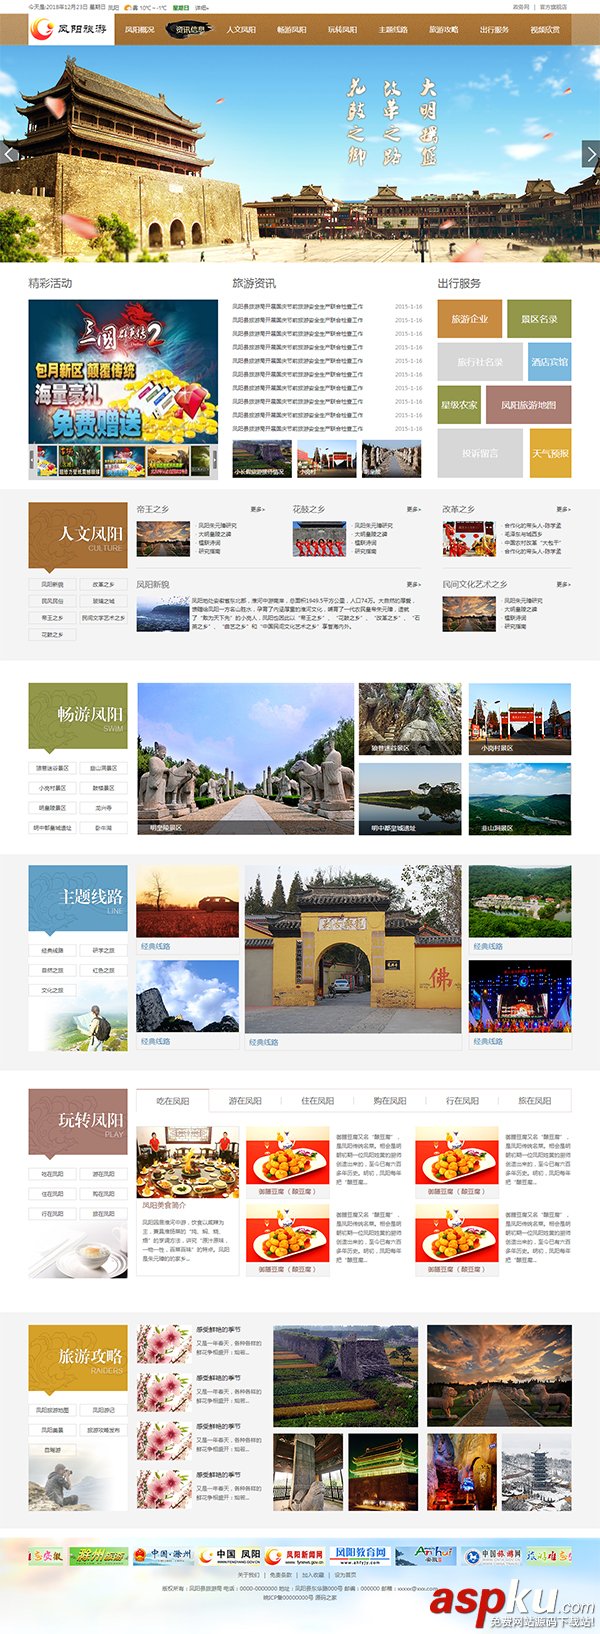 地方旅游局旅游资讯网站HTML源码下载